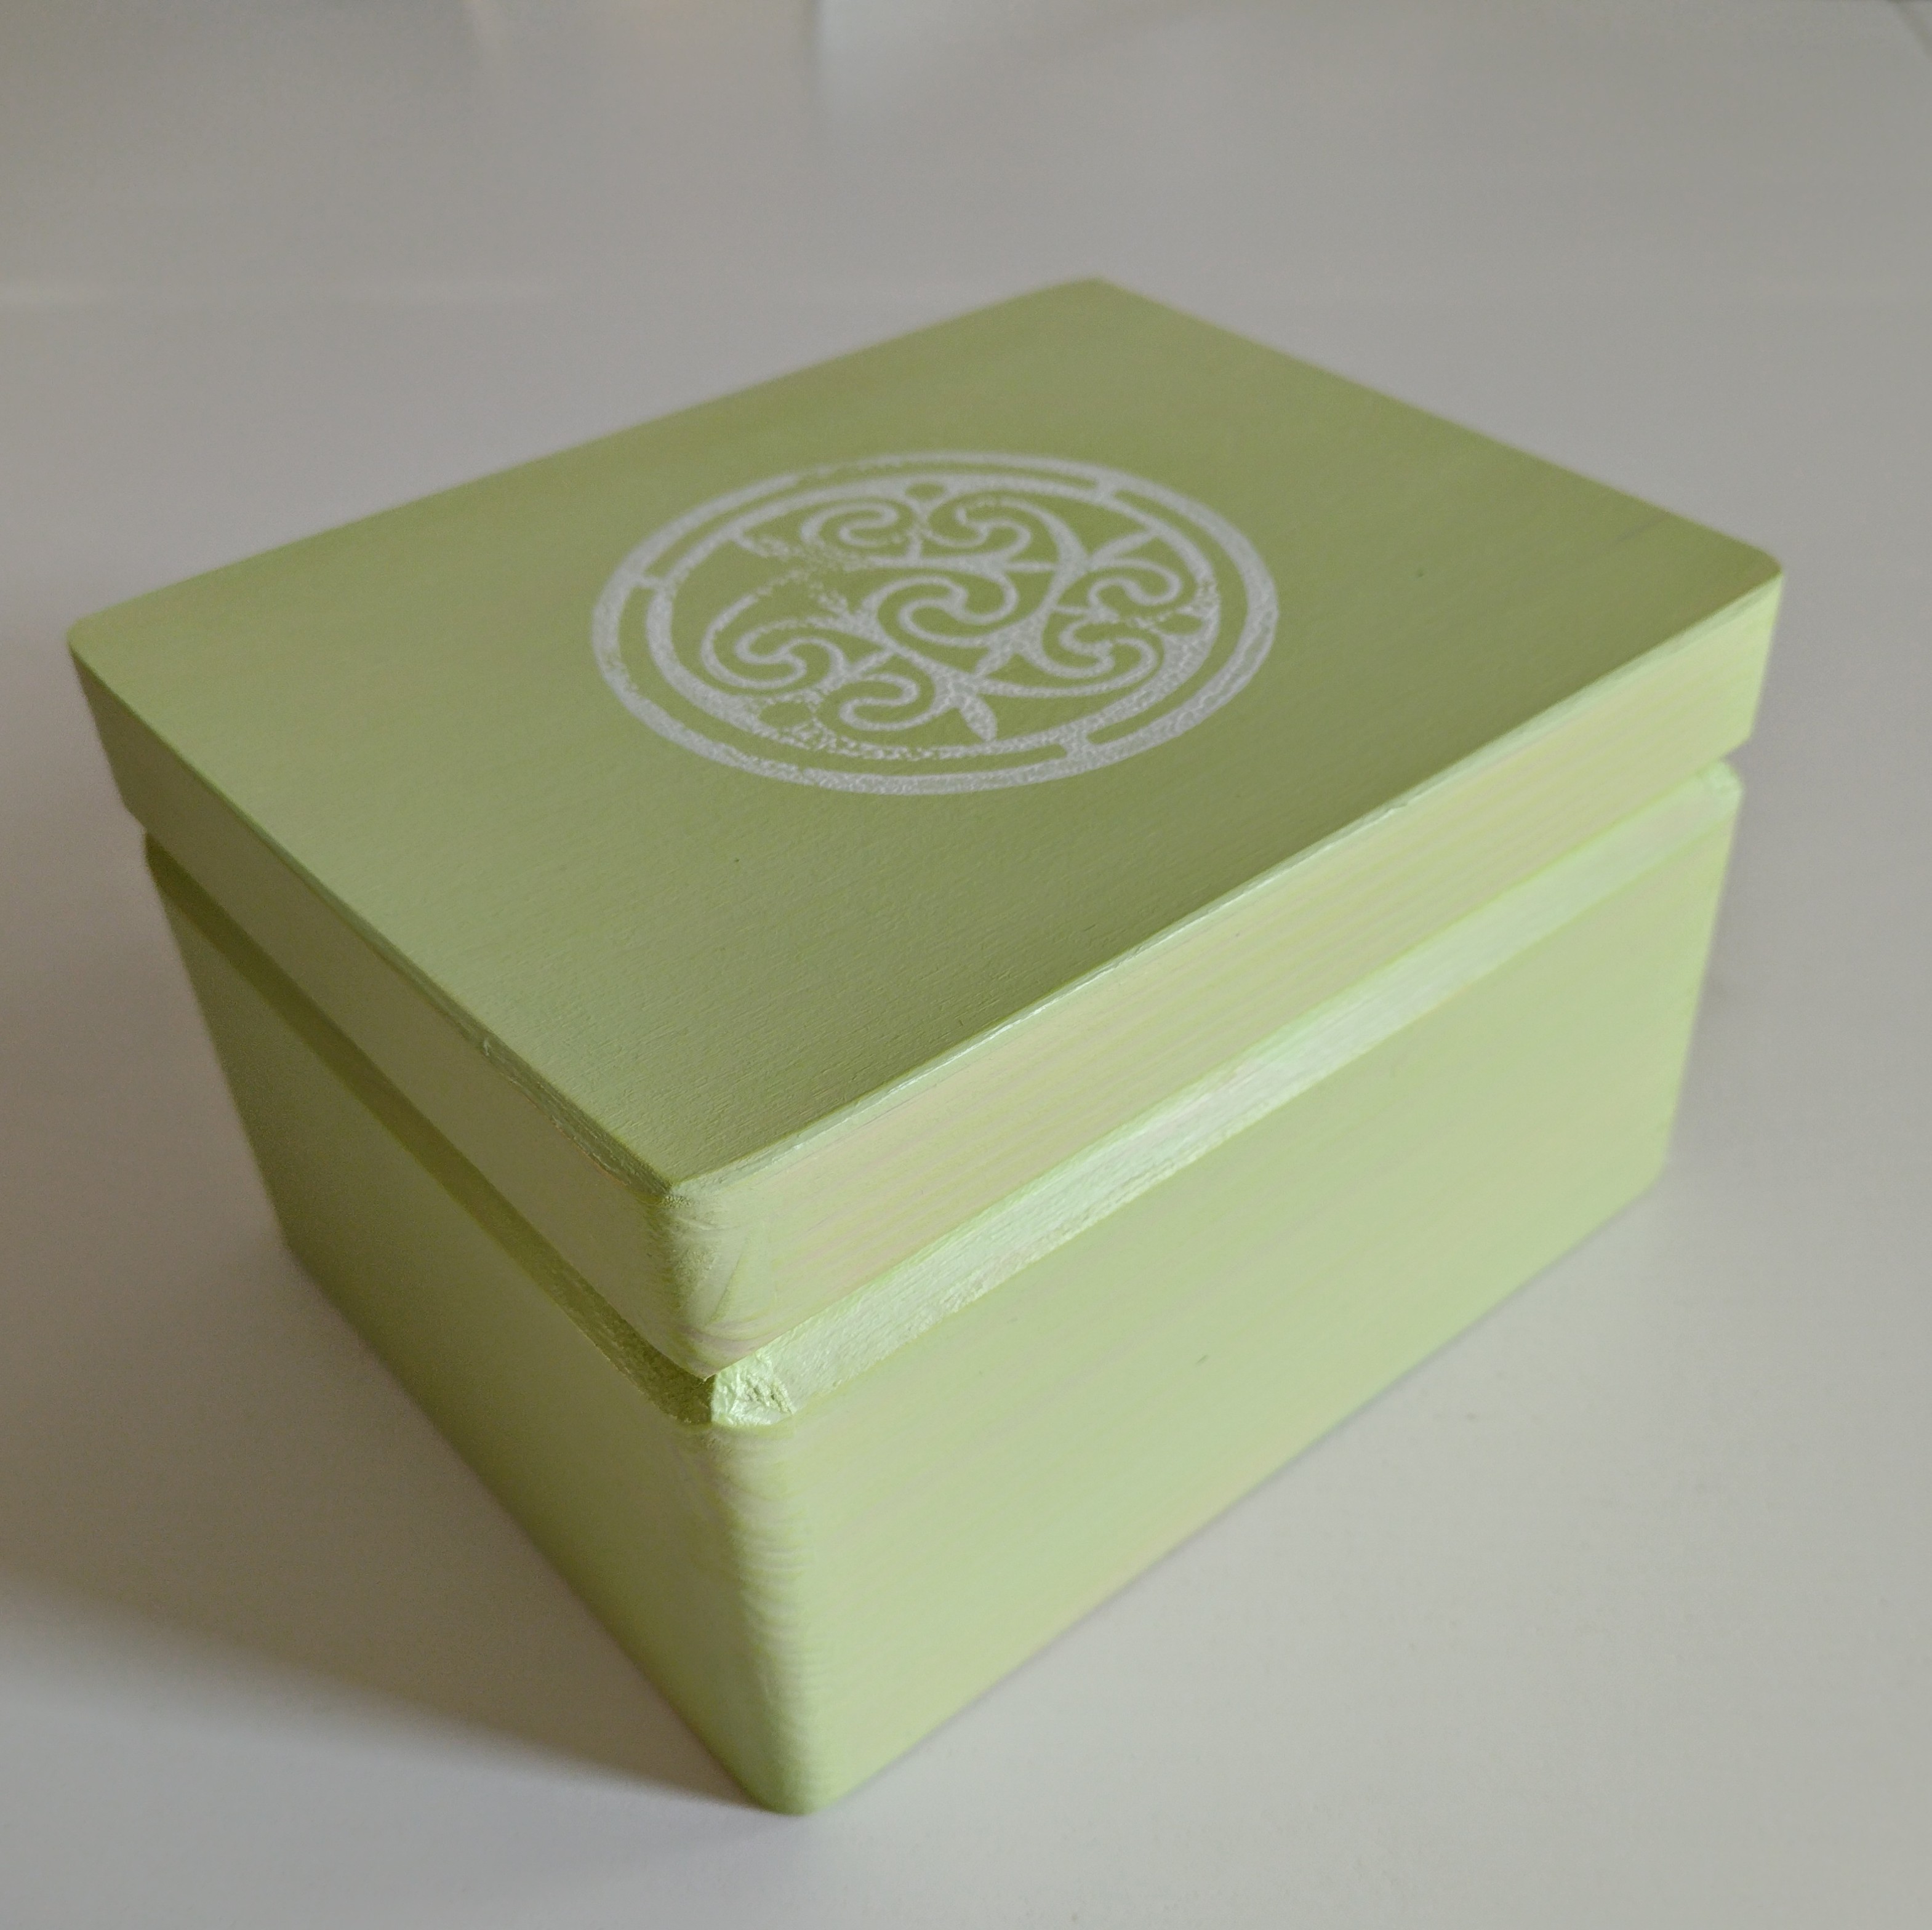 1.2 Krabička - Zelená, s ornamentem